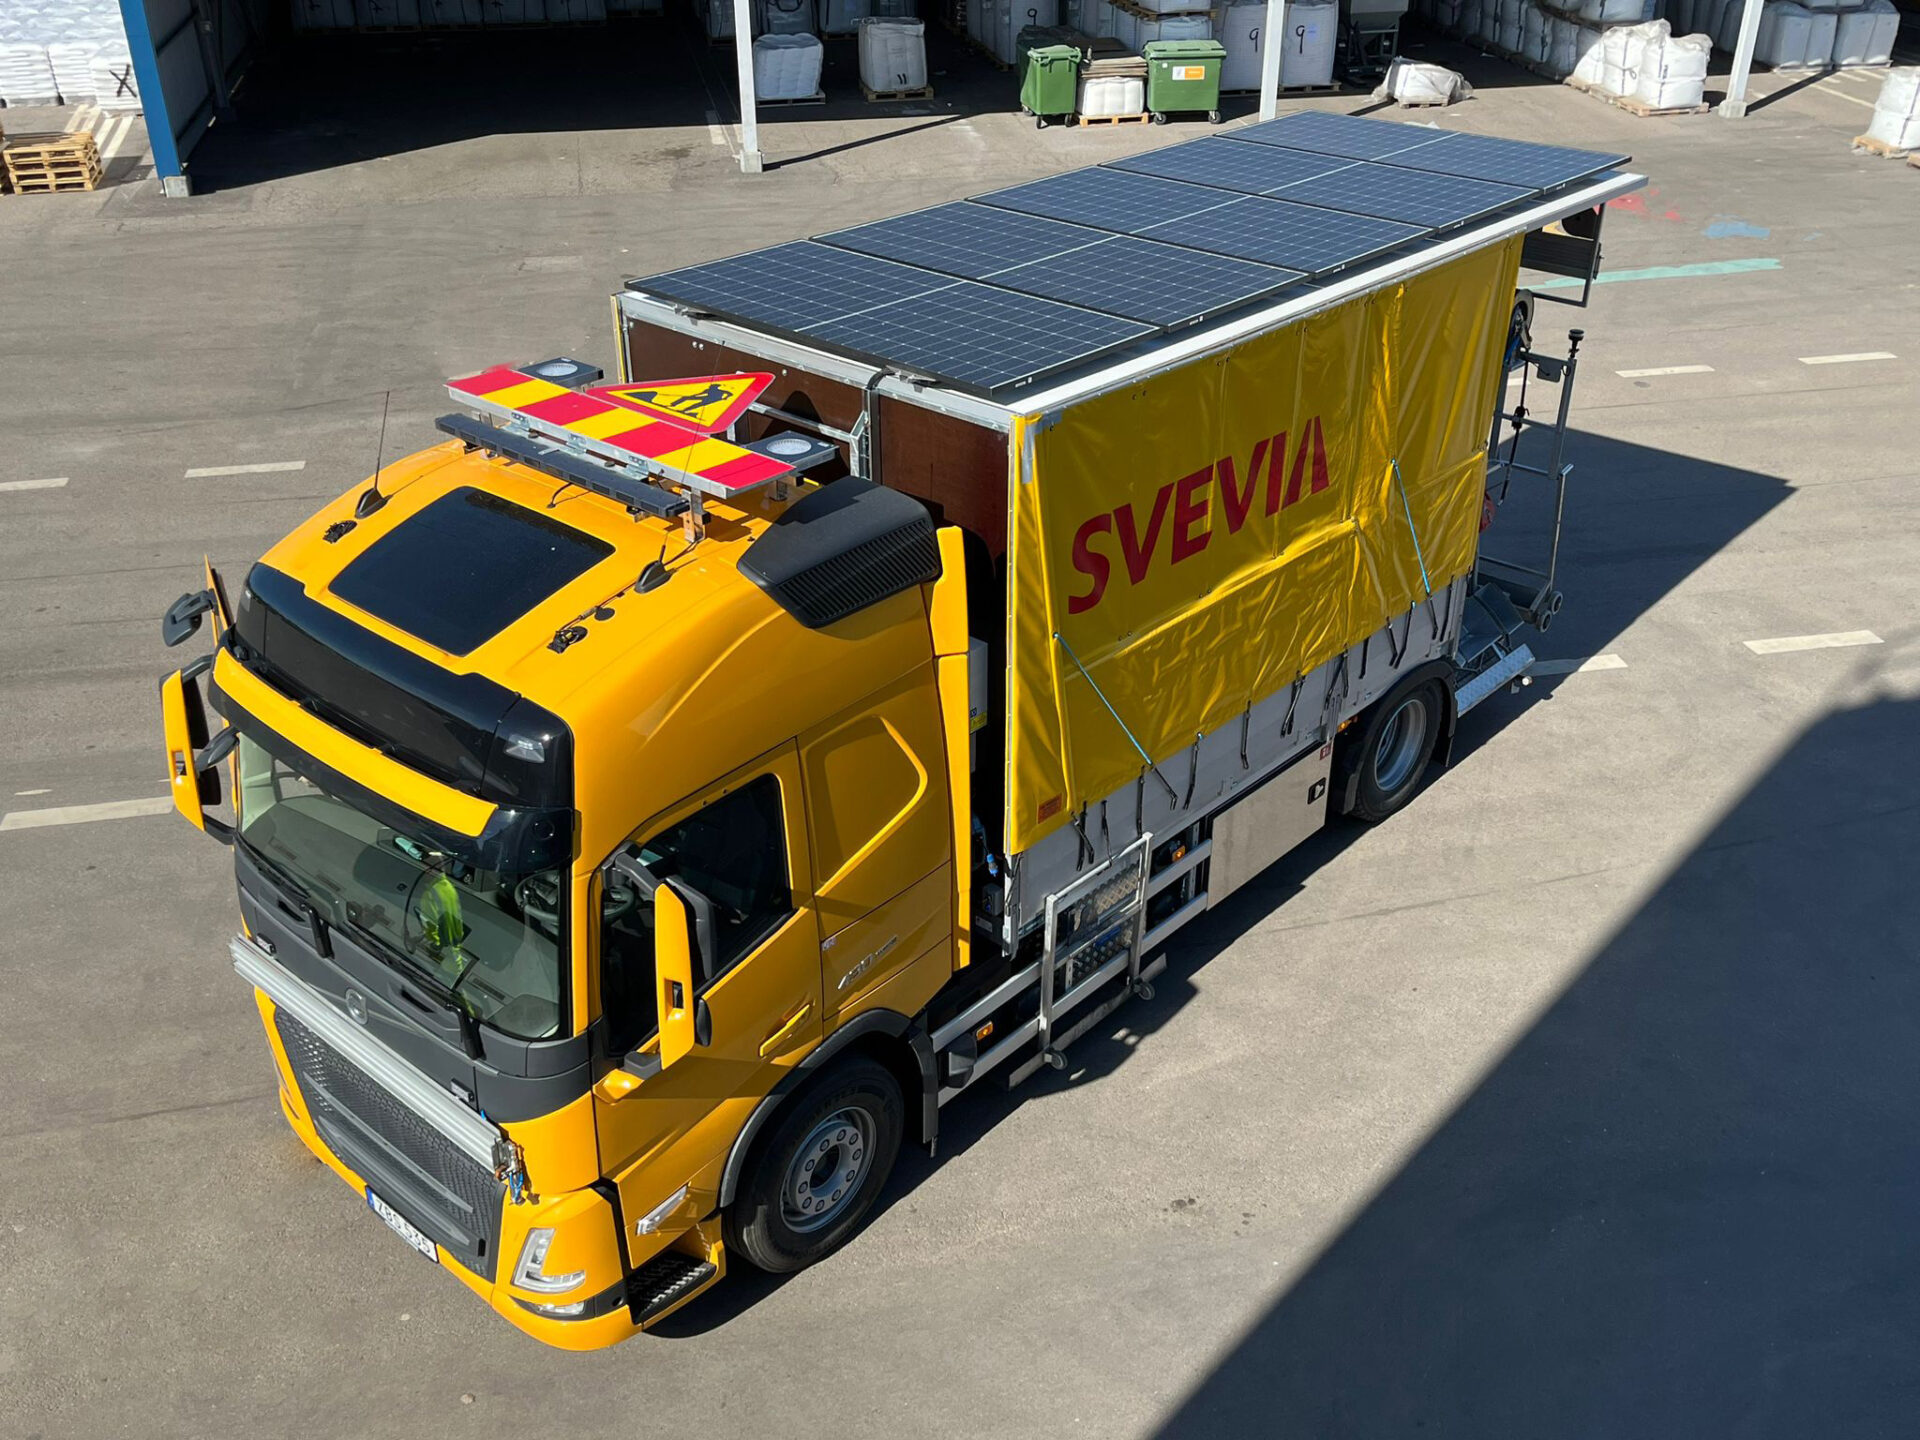 Svevia är först i Sverige med att satsa på solceller för att driva vägmarkeringsfordon. Foto: Tim Ljung